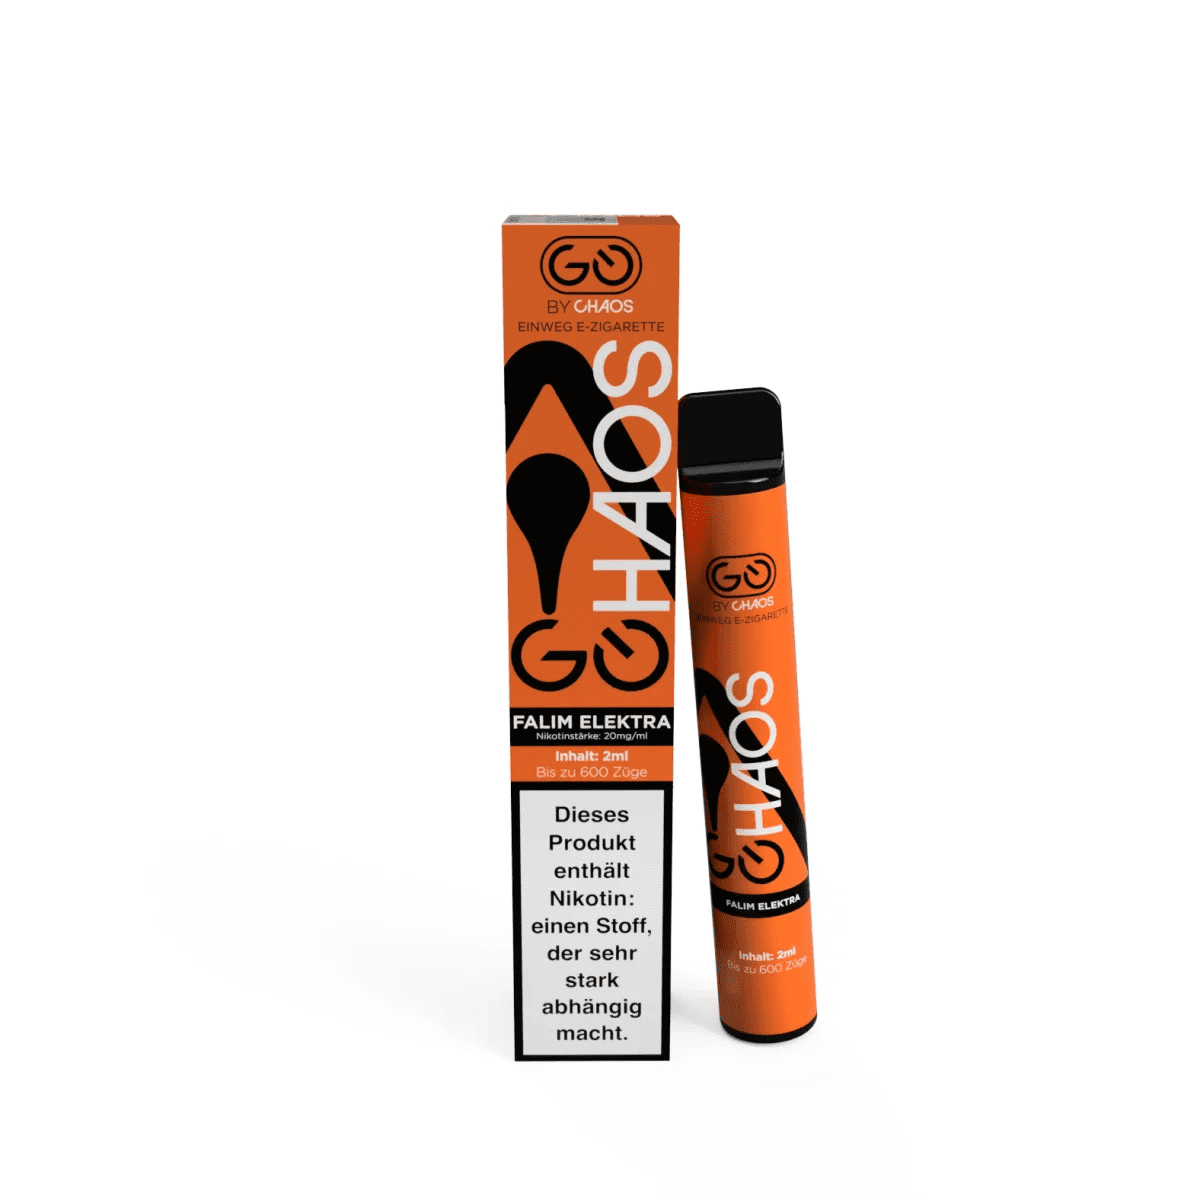 Chaos 600 - Einweg E-Zigarette - Falim Elektra 2% Nikotin